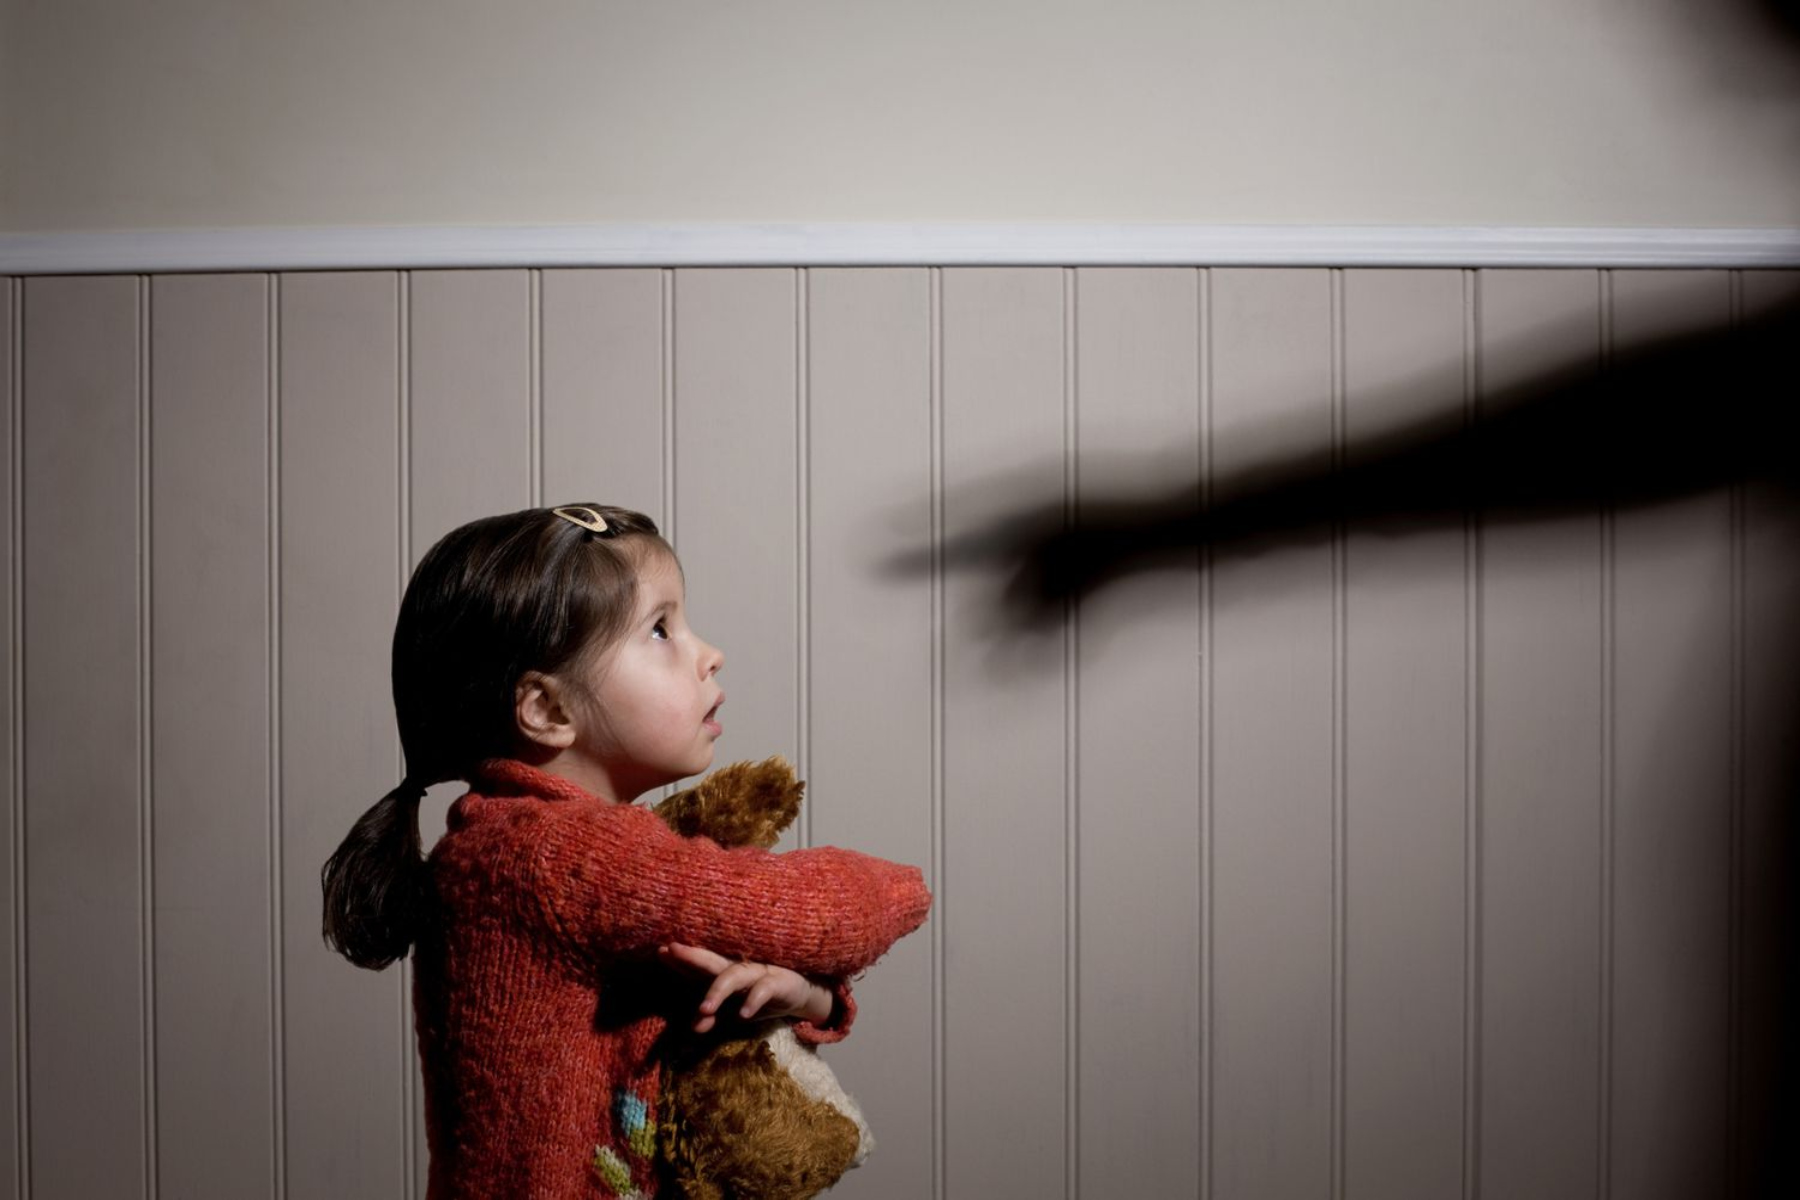 Ψυχική υγεία: Η παιδική κακοποίηση φέρει ψυχικά προβλήματα σε μεγαλύτερη ηλικία